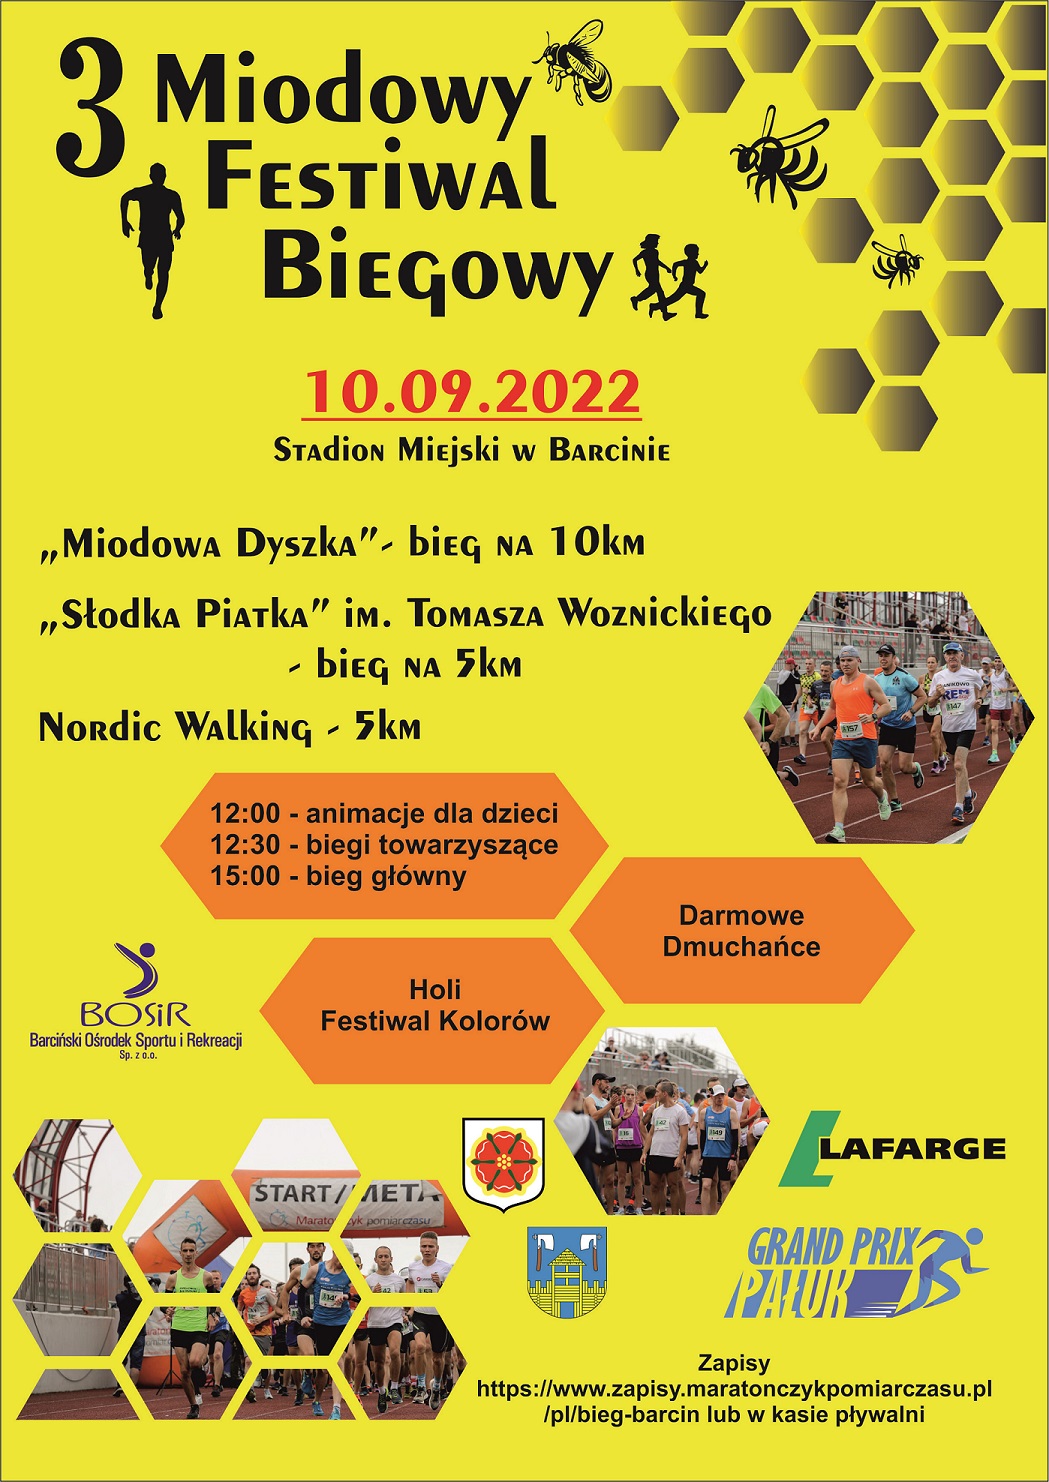 Plakat promujący 3 Miodowy Festiwal Biegowy w Barcinie w dniu 10 września 2022 roku w ramach cyklu Grand Prix Pałuk 2022